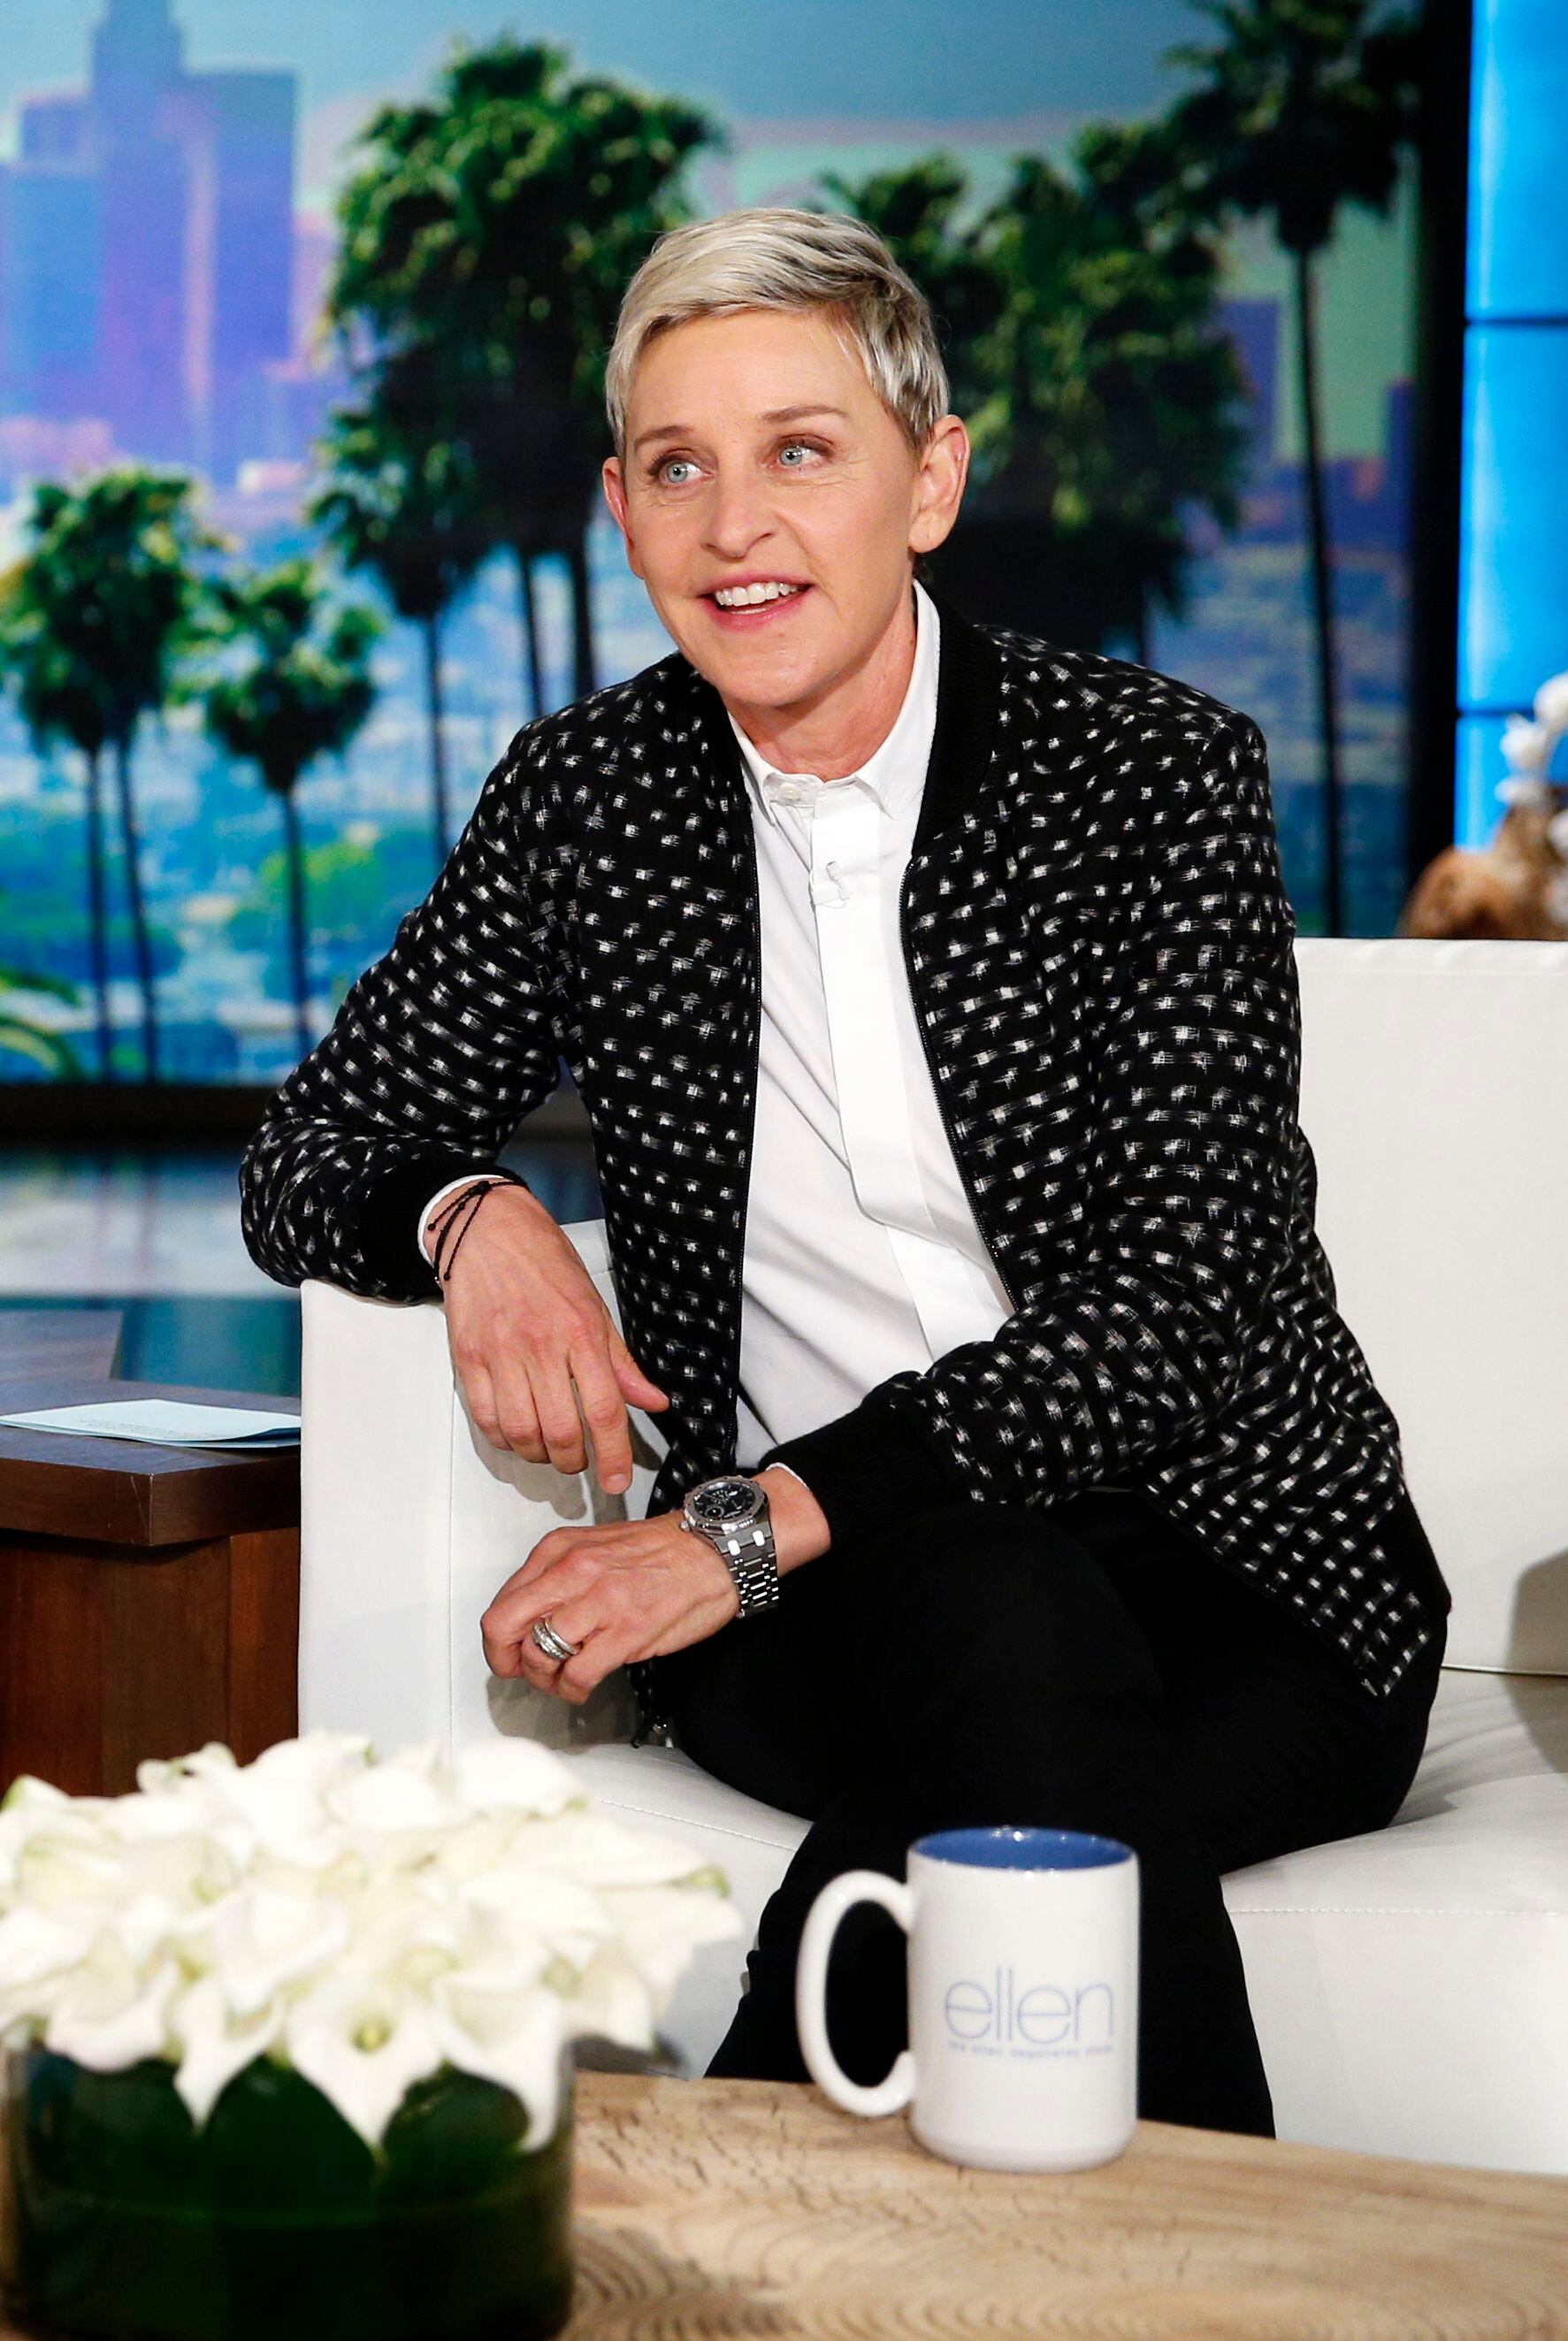 Ellen DeGeneres ending her TV talk show next year: reports